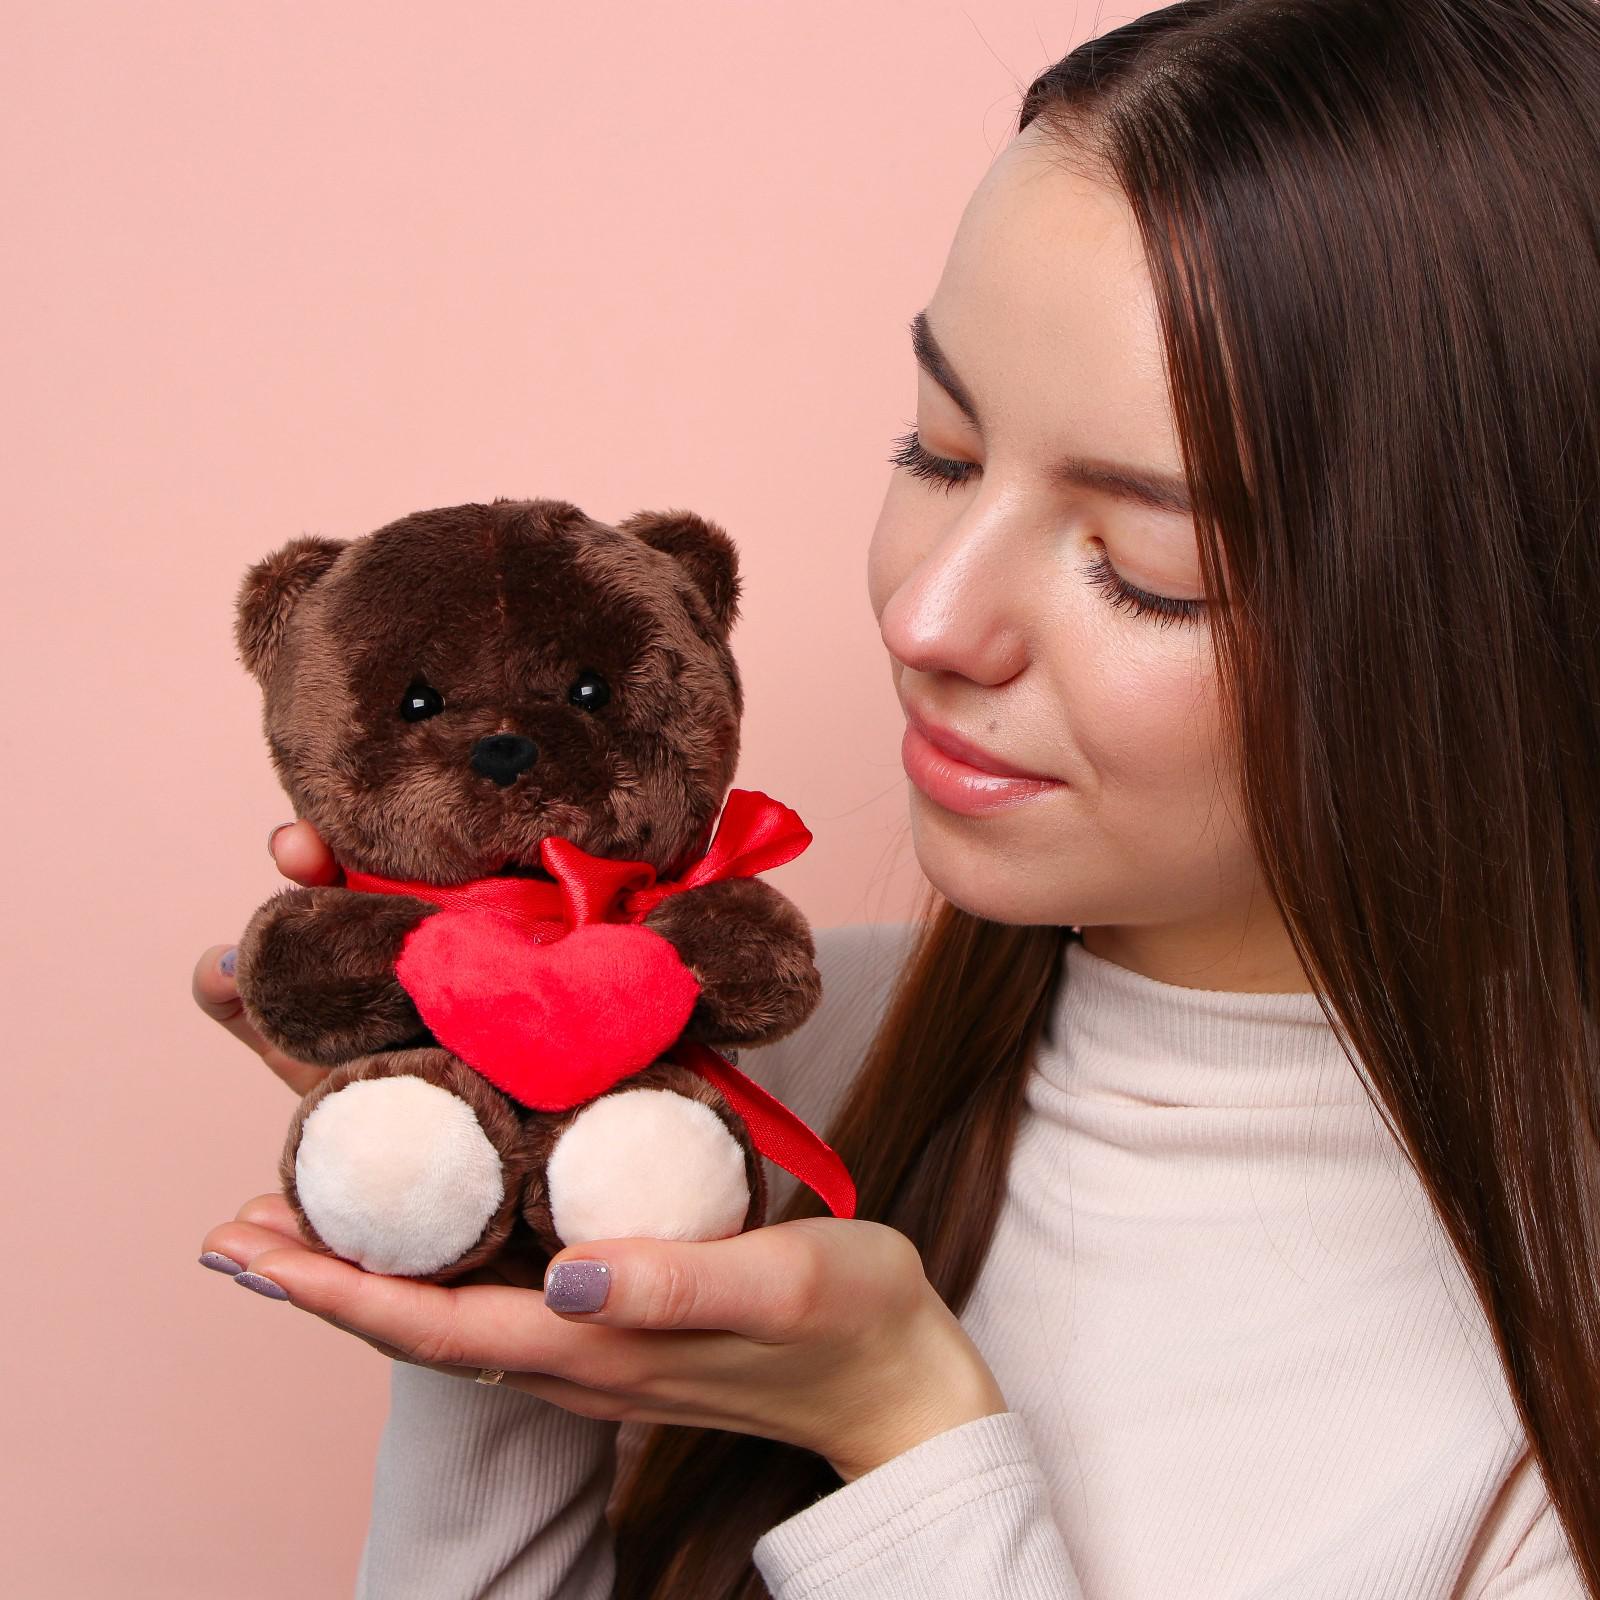 Мягкая игрушка Milo Toys Ted с сердечком мишка 25 см - фото 2